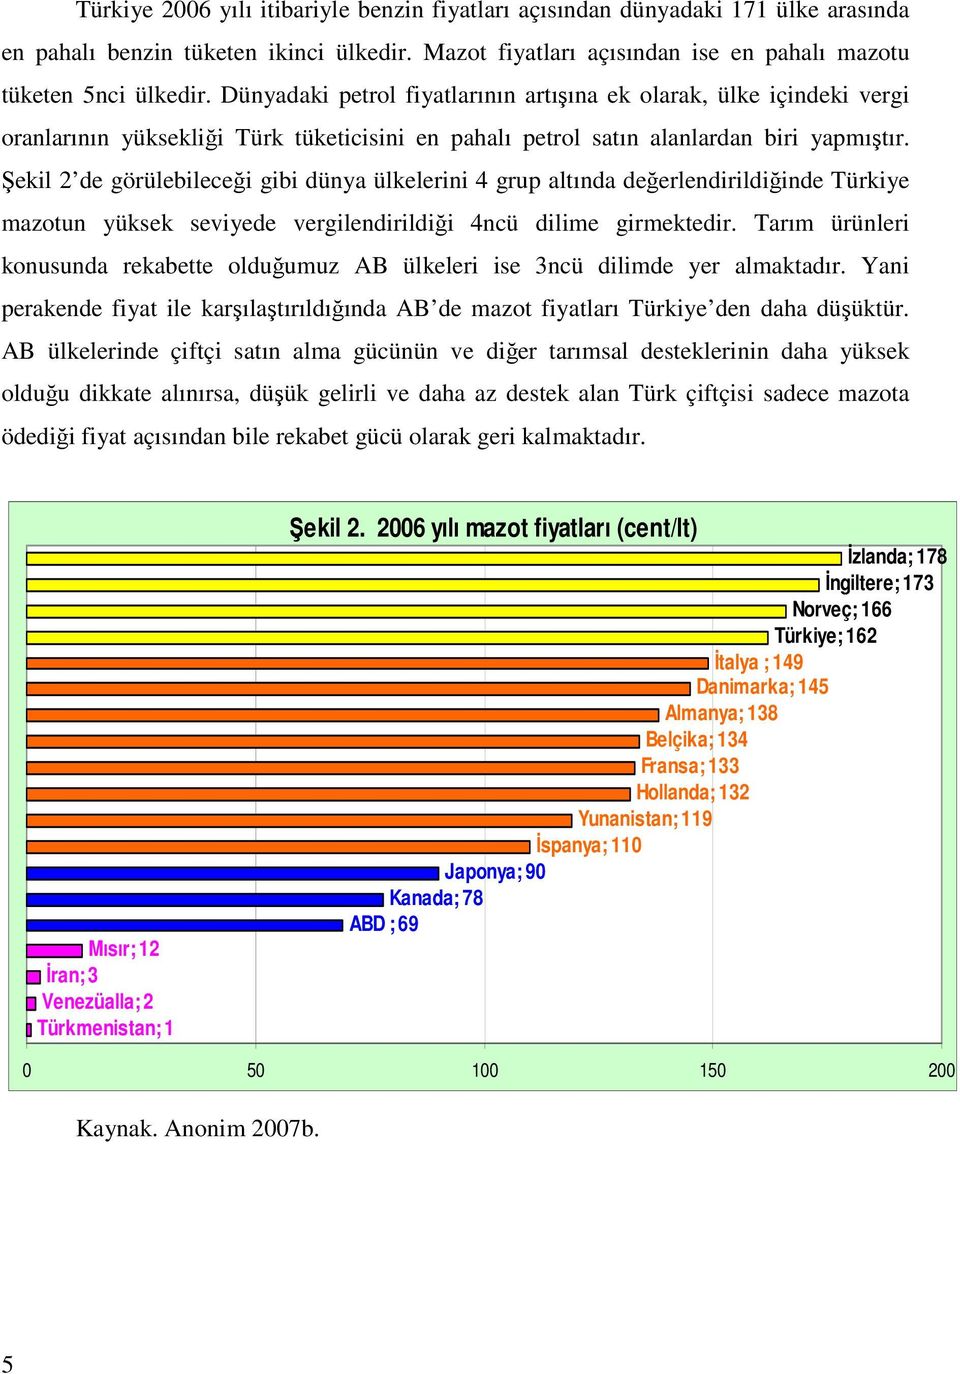 Şekil 2 de görülebileceği gibi dünya ülkelerini 4 grup altında değerlendirildiğinde Türkiye mazotun yüksek seviyede vergilendirildiği 4ncü dilime girmektedir.